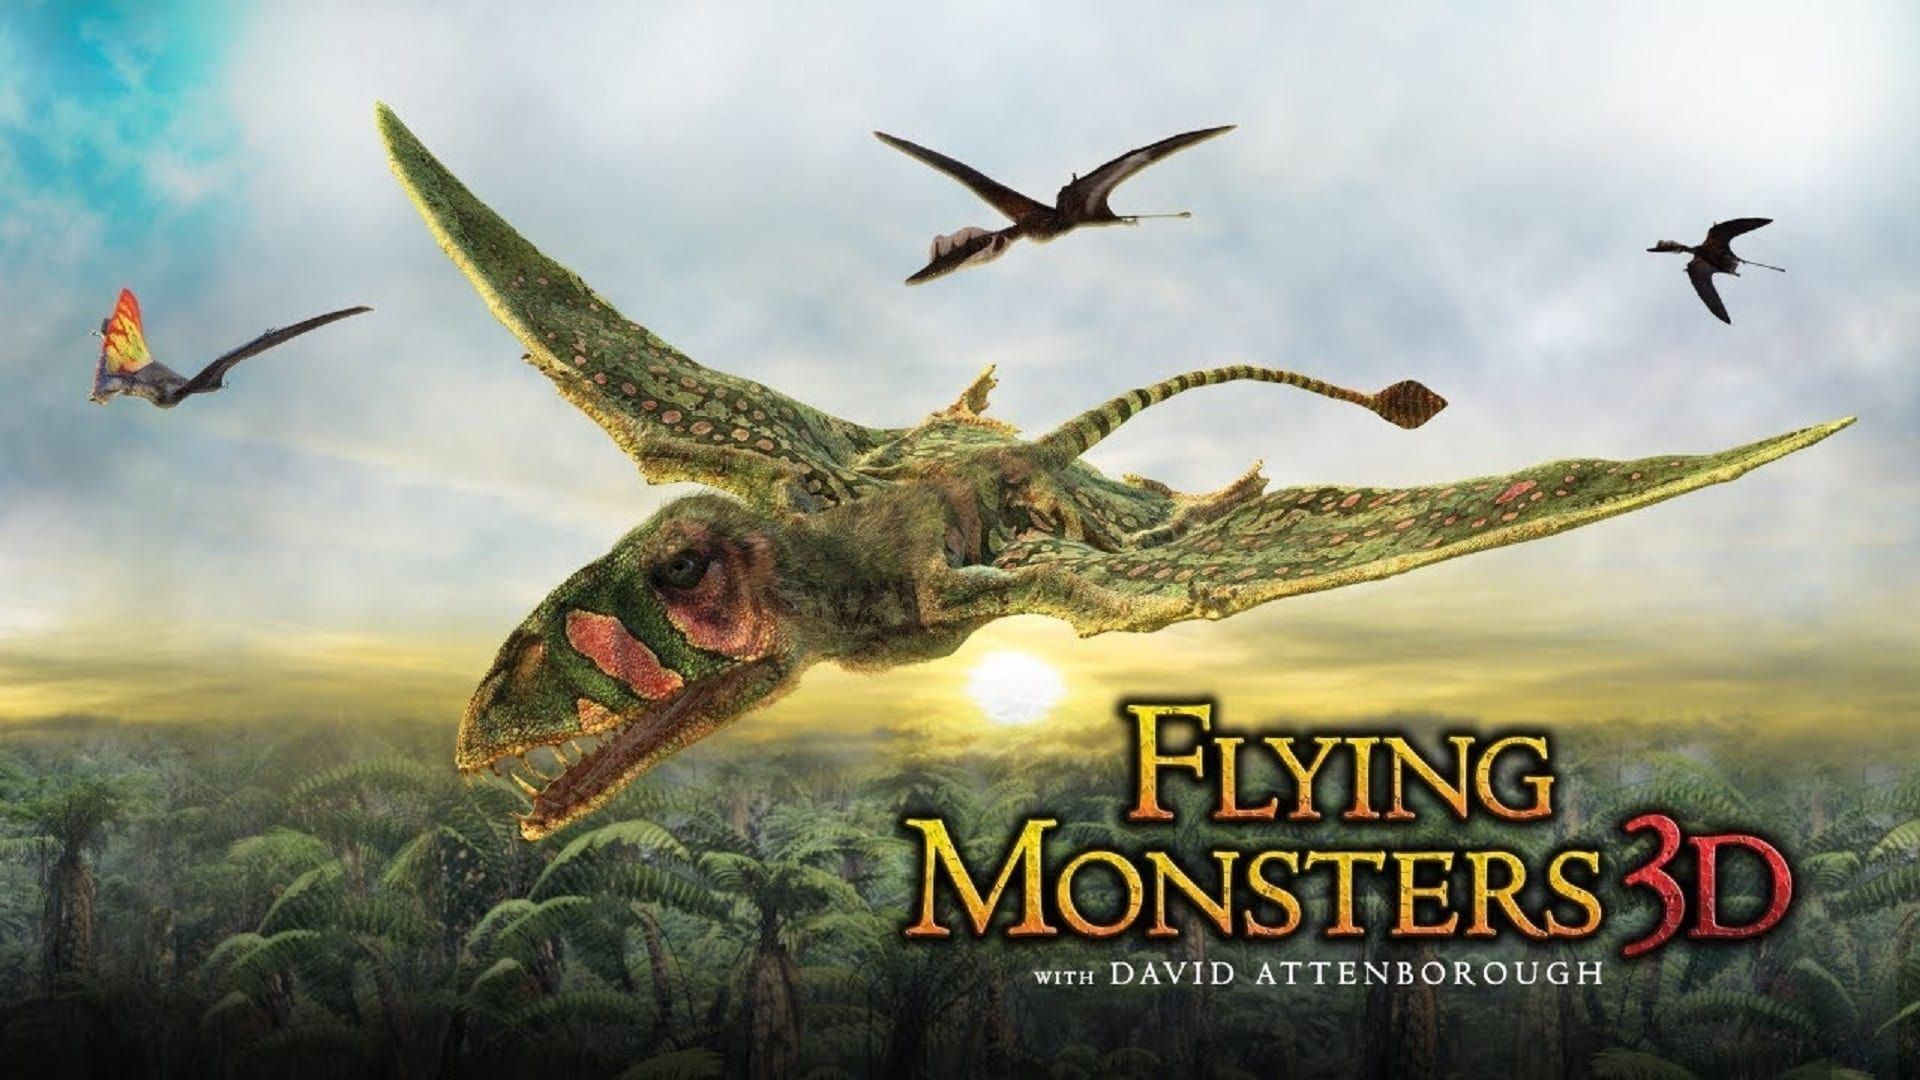 Cubierta de Gigantes voladores 3D con David Attenborough